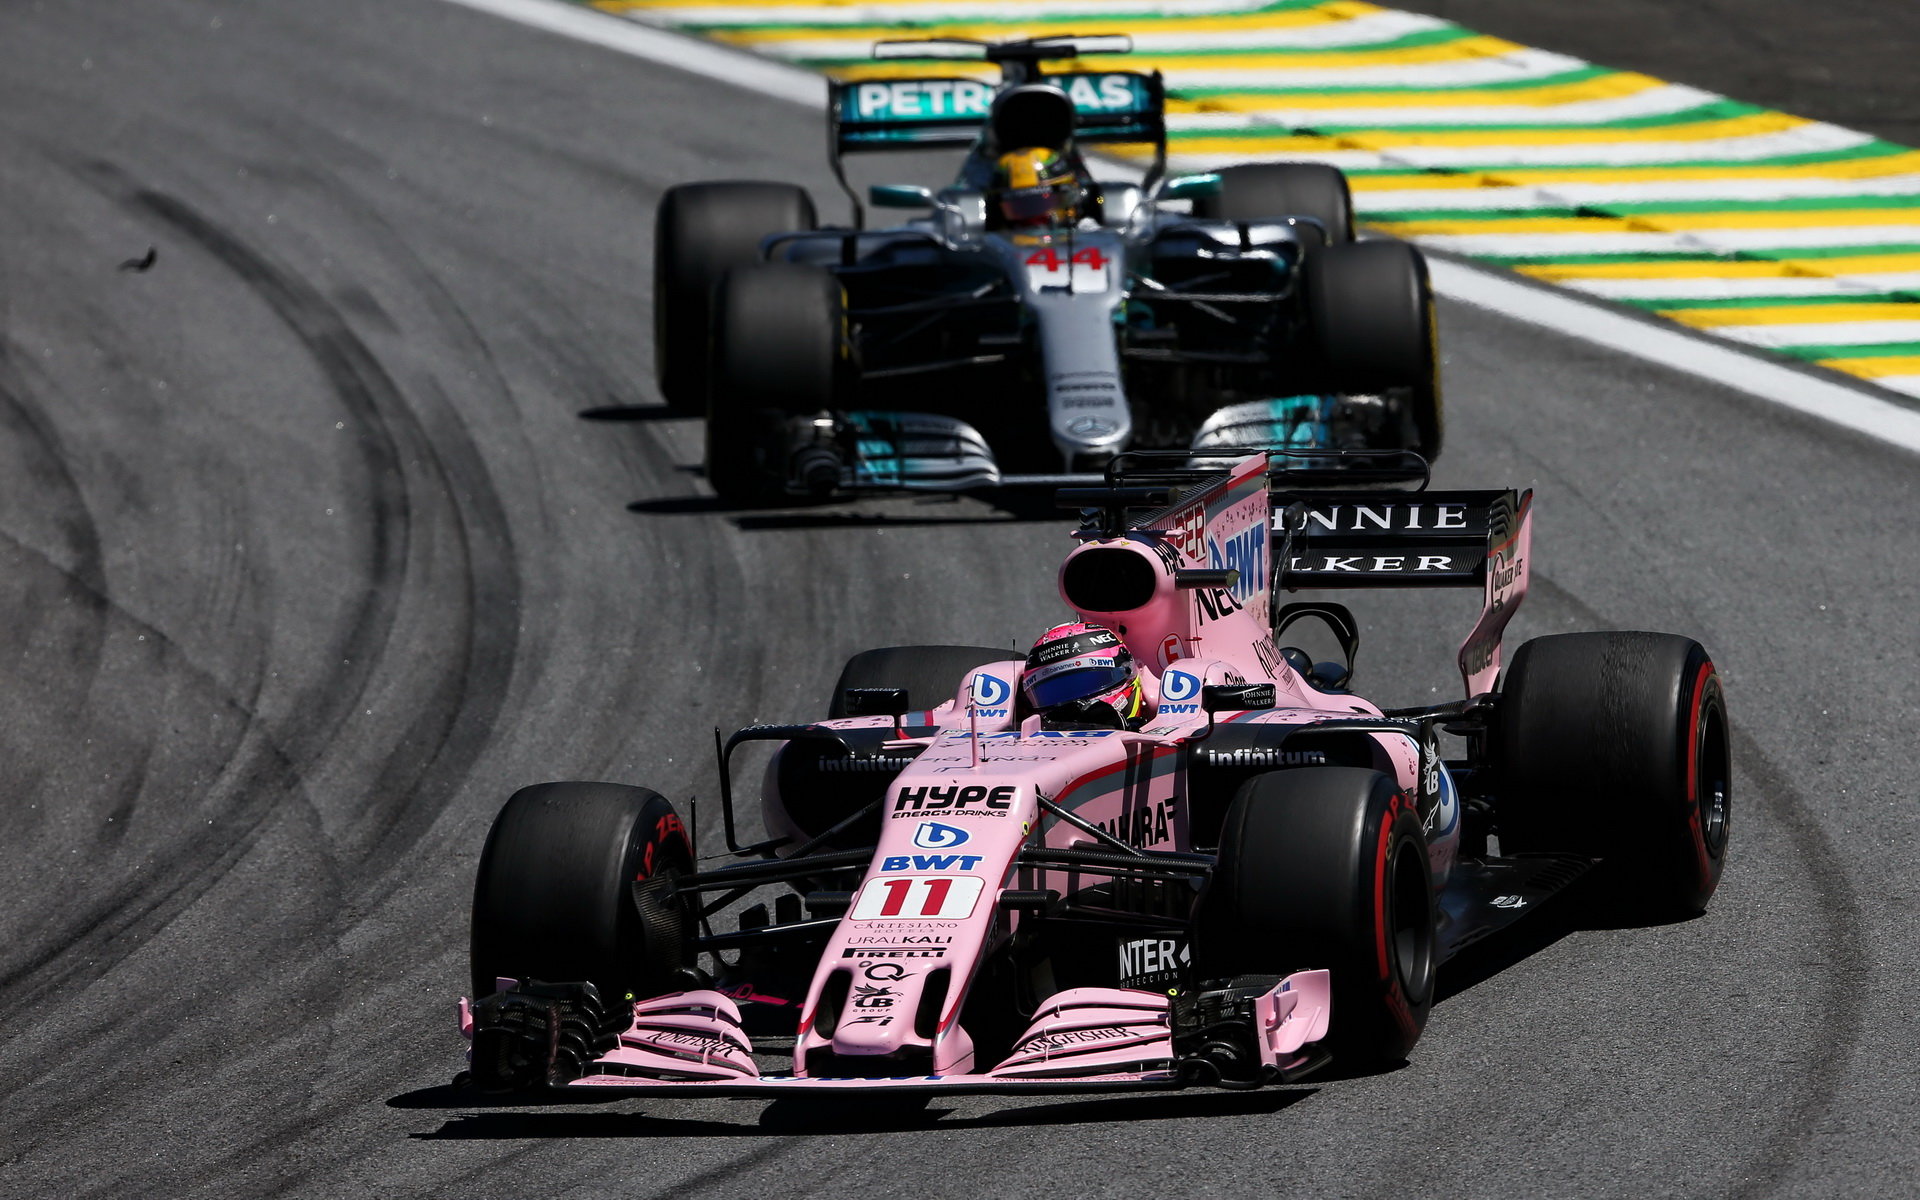 Sergio Pérez a Lewis Hamilton v závodě v Brazílii